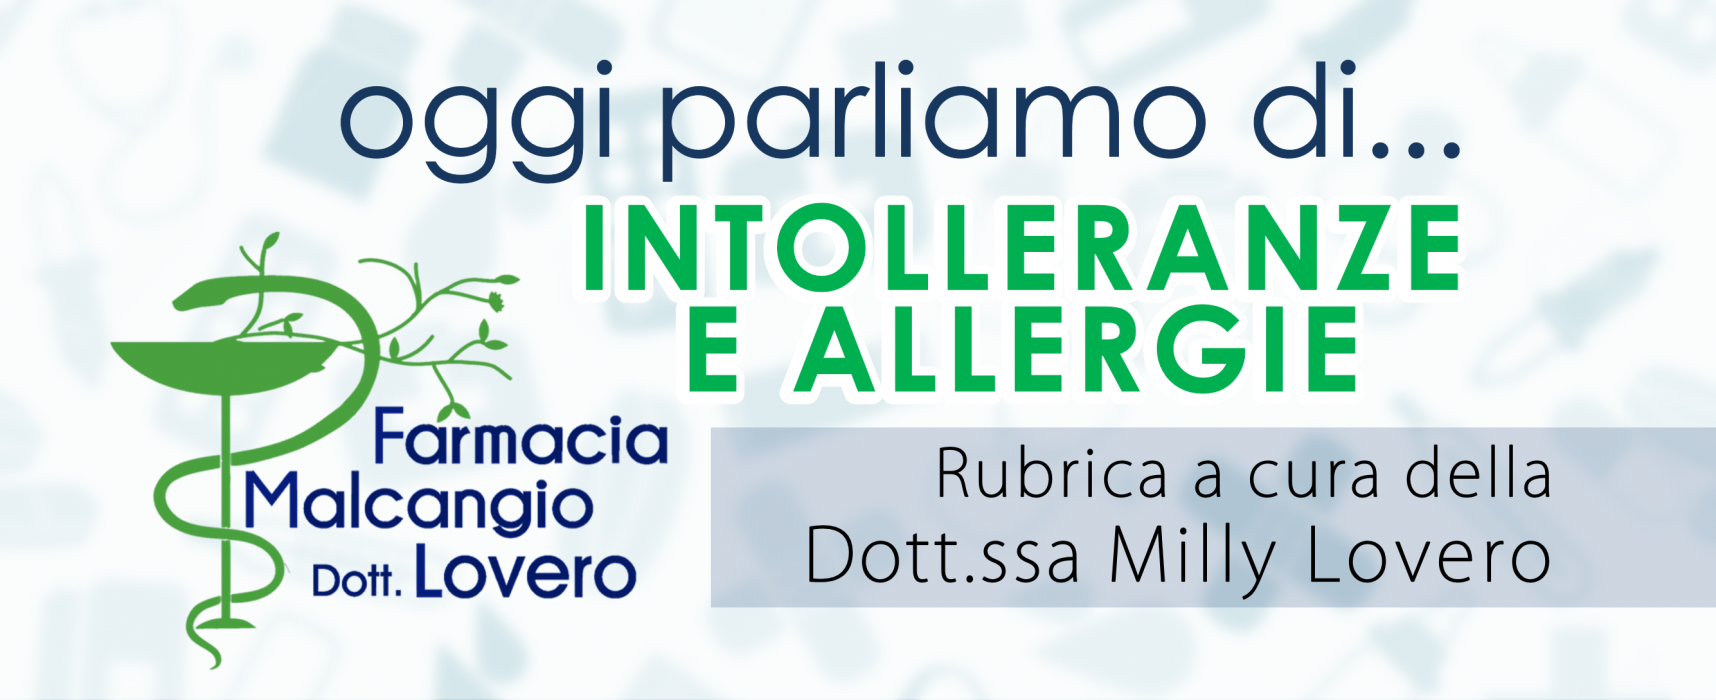 “Oggi parliamo di…” intolleranze e allergie, rubrica a cura della Dott.ssa Milly Lovero